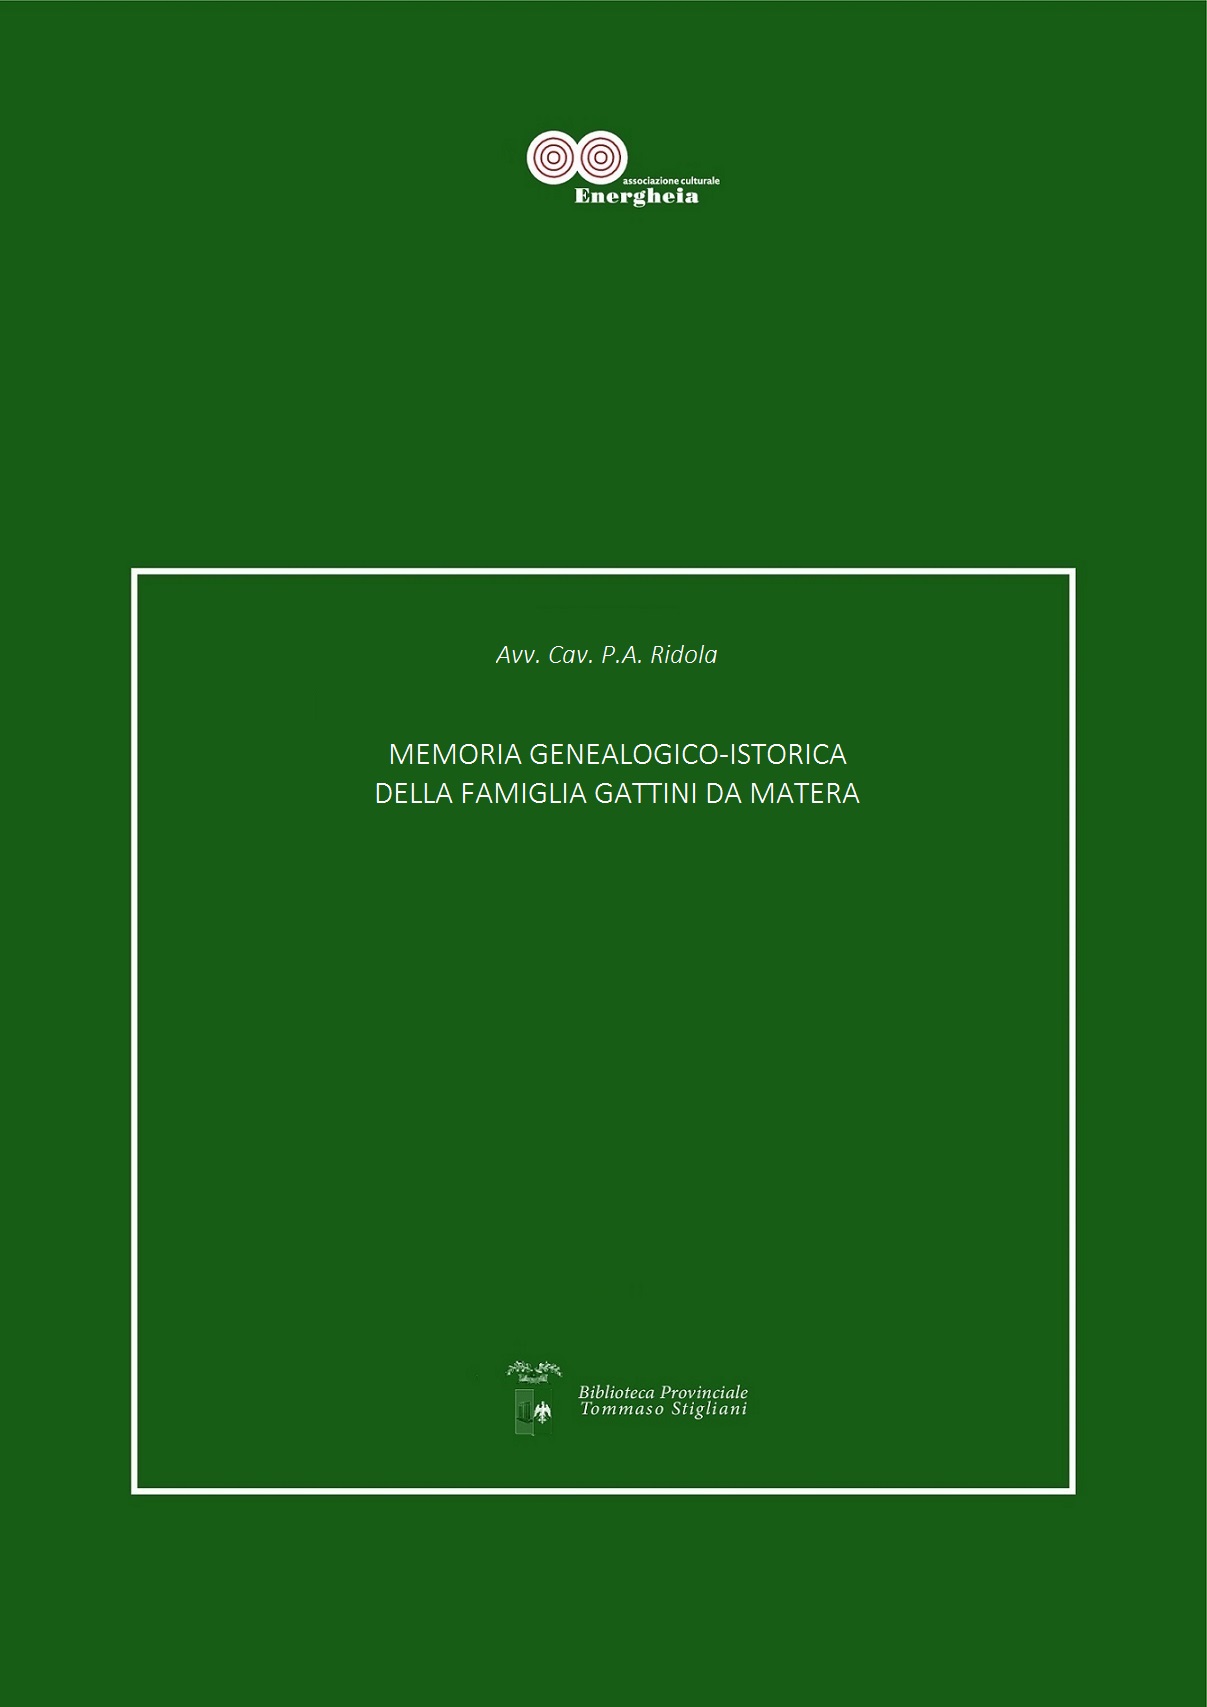 Pietro Antonio Ridola, Memoria-genealogico-istorica-della-famiglia-Gattini-da-Matera, 1887 pdf